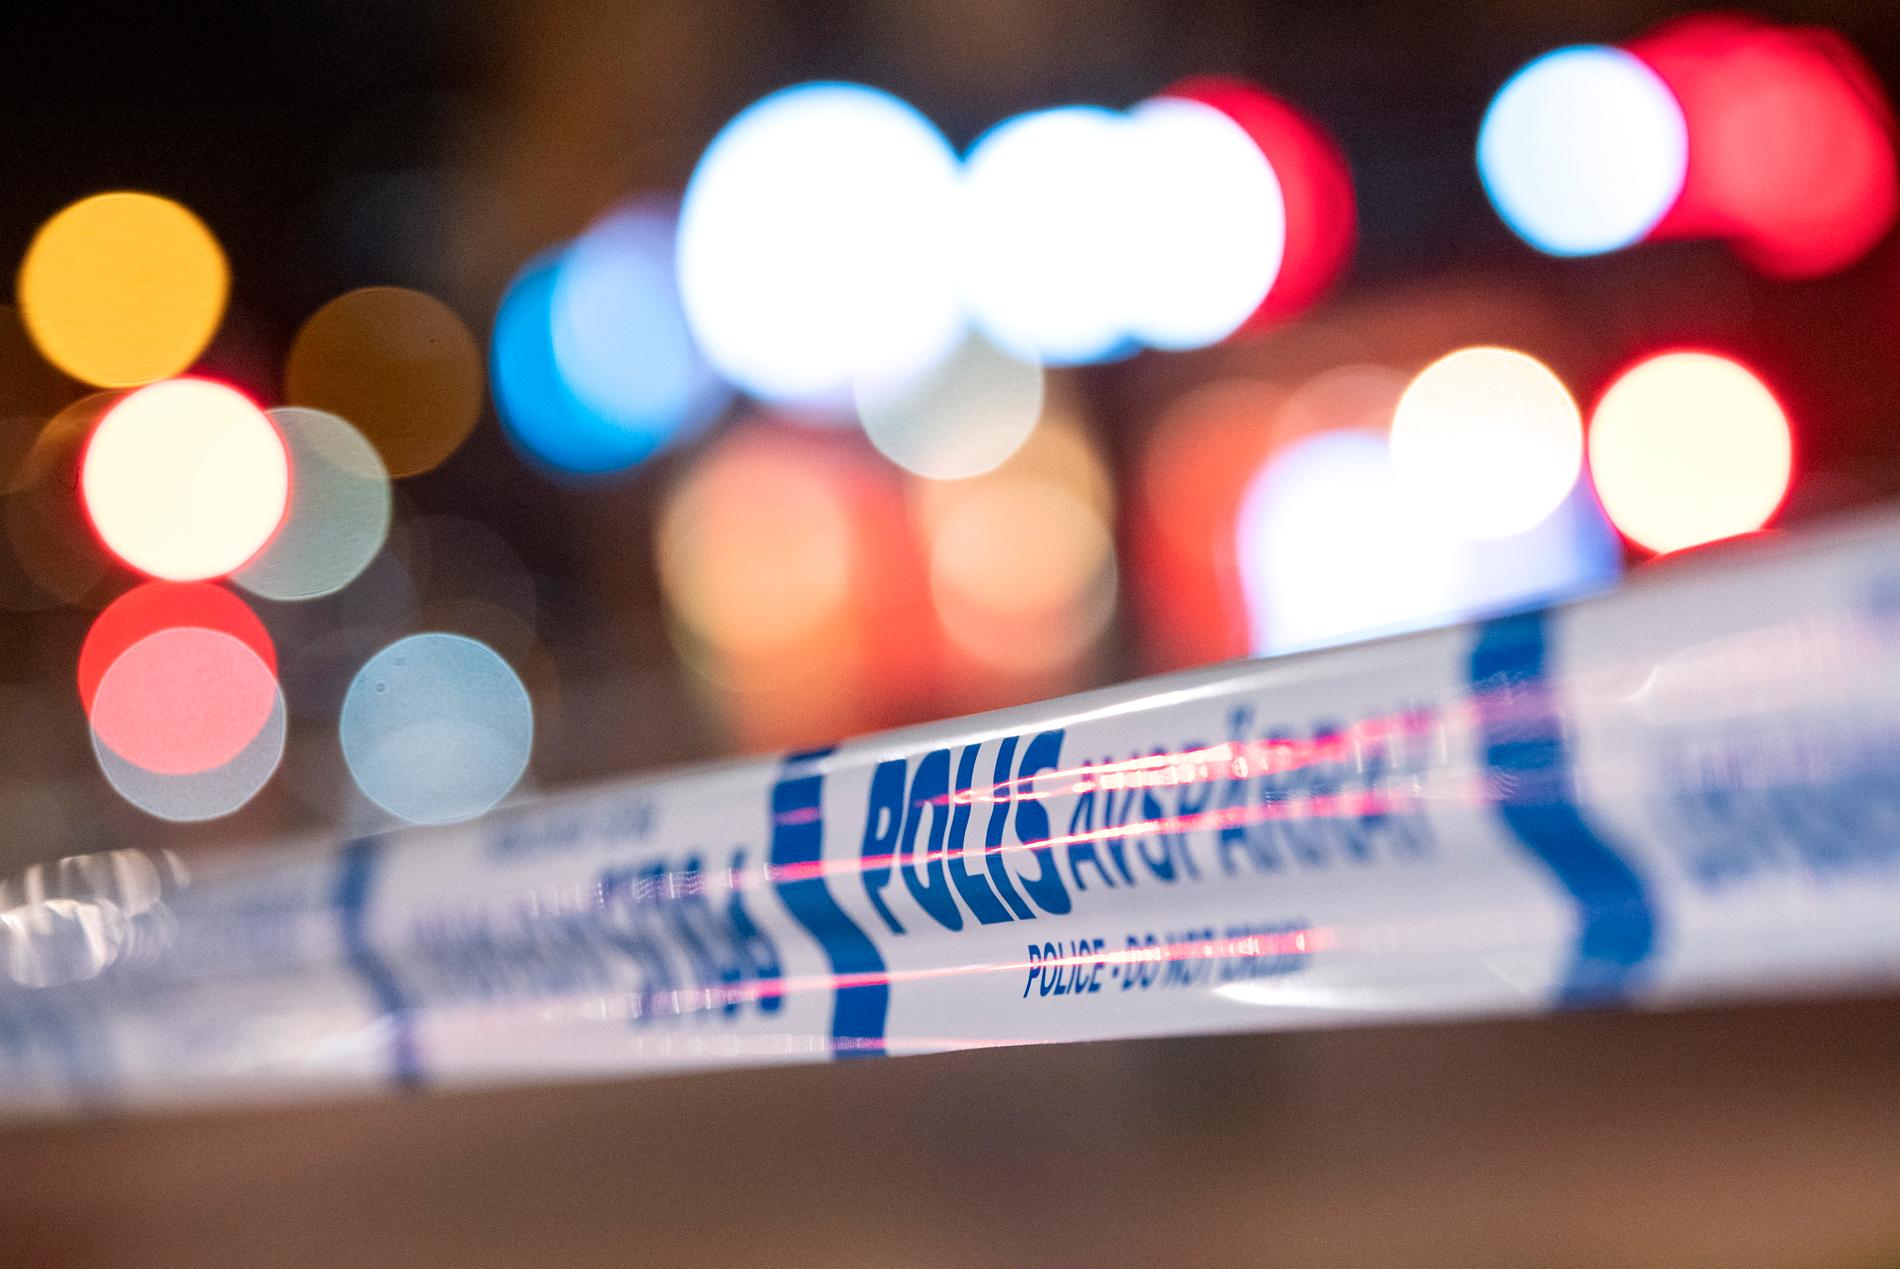 En man har hittats död i en fastighet i Filipstads kommun, enligt polisen. Arkivbild.